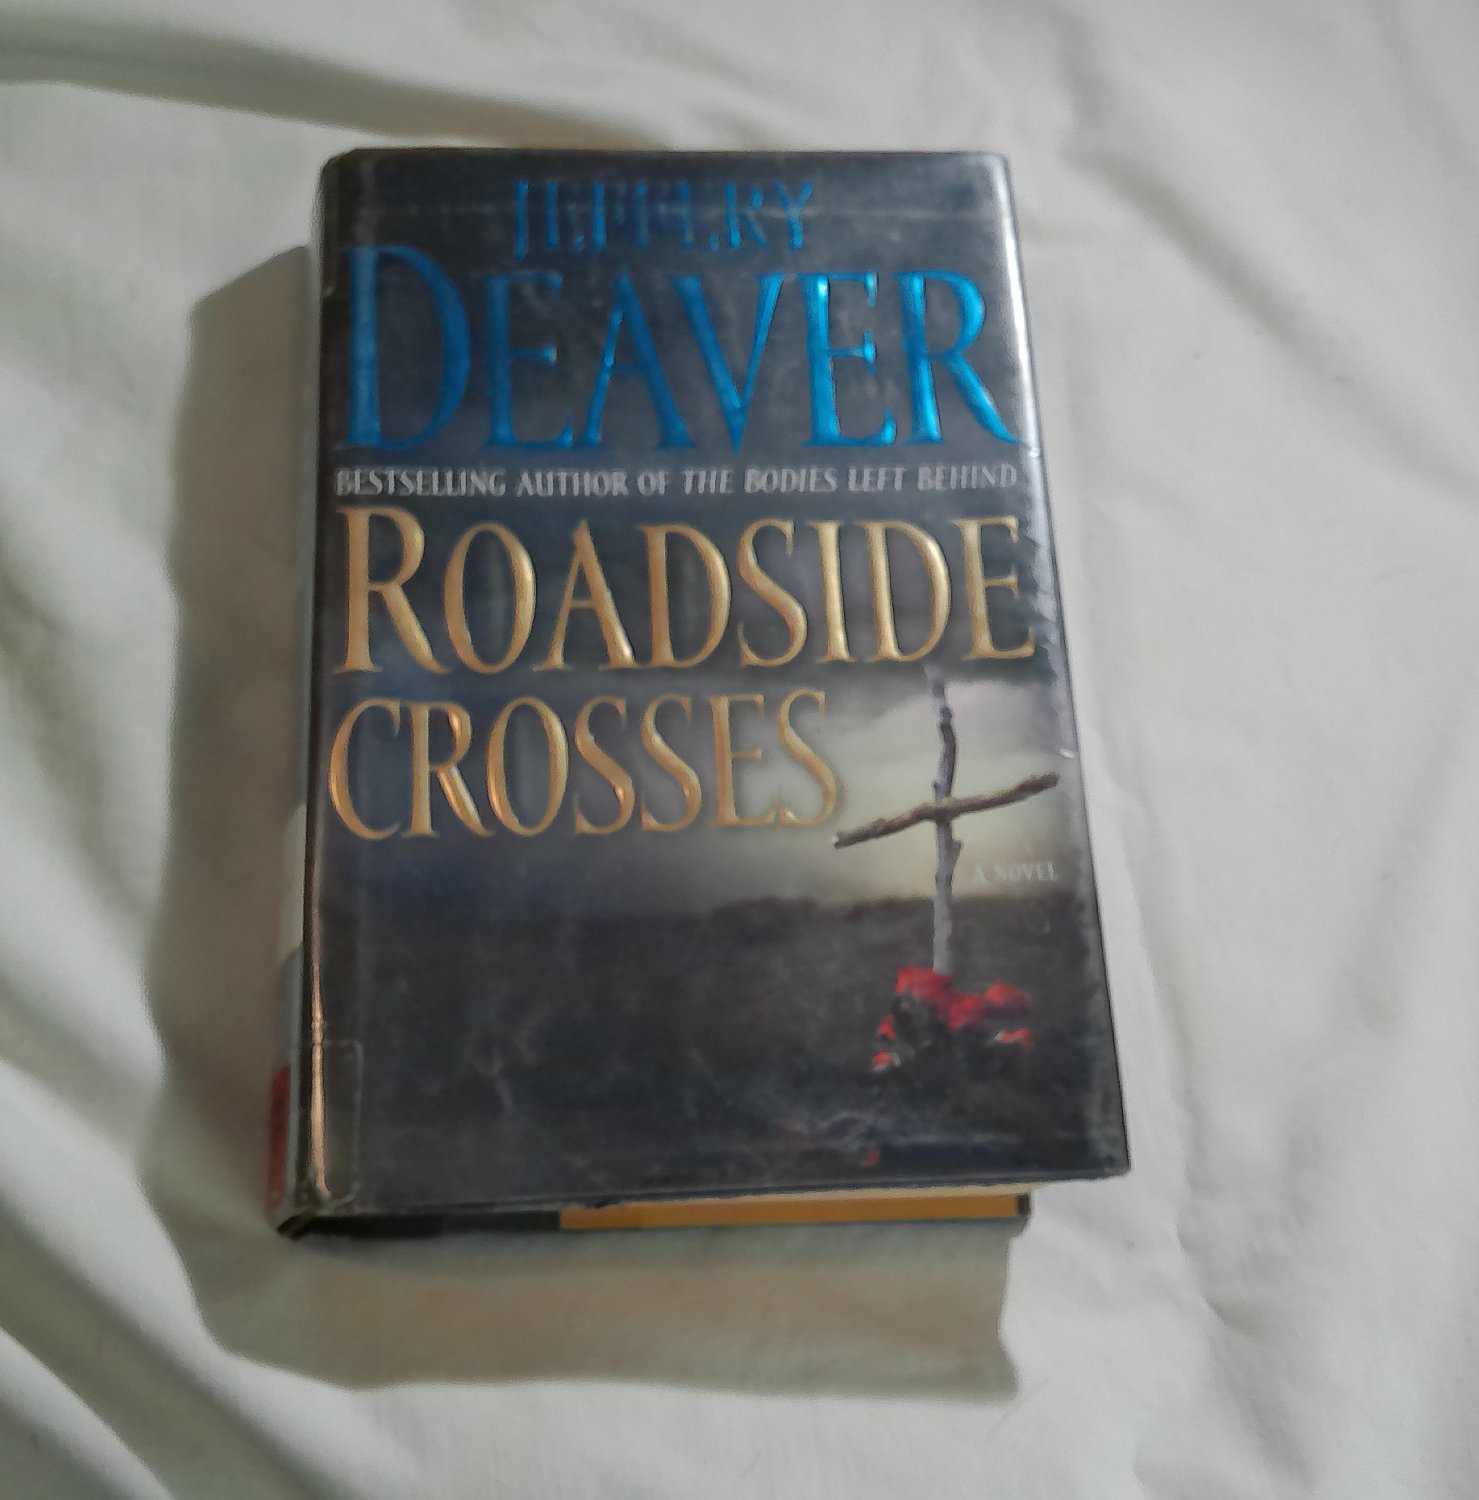 Roadside Crosses by Jeffery Deaver (2009) (190) Kathryn Dance #2, Mystery, Thriller